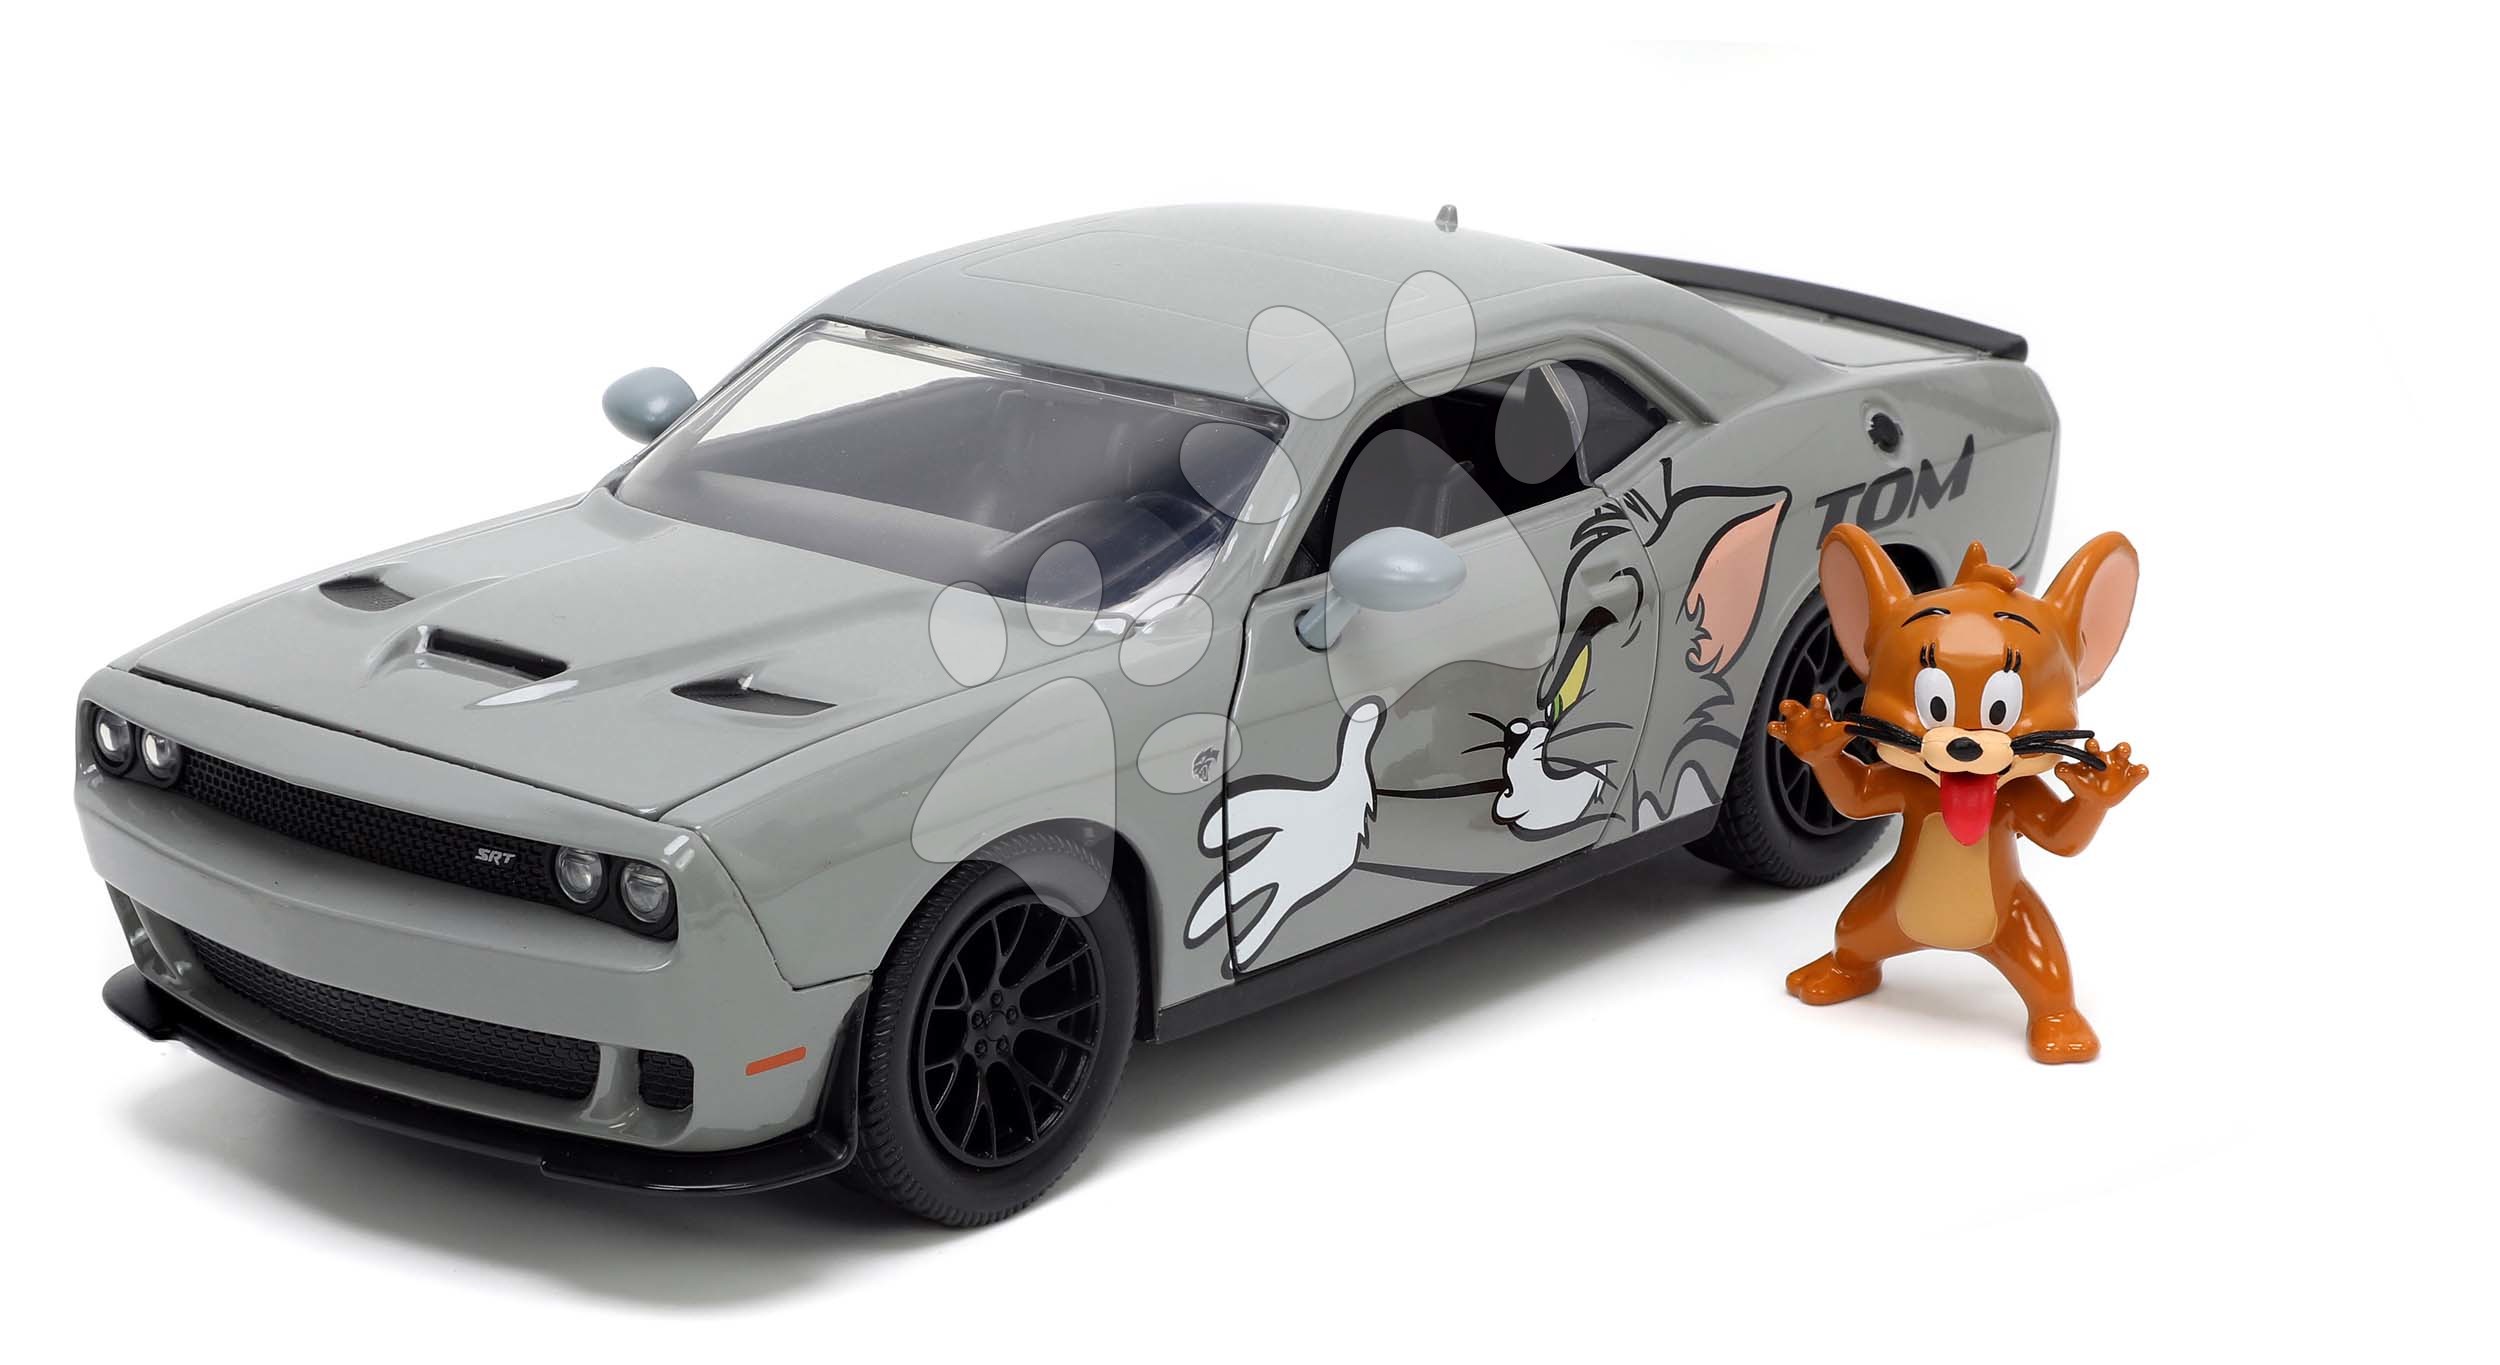 Autíčko Tom a Jerry Dodge Challenger 2015 Jada kovové s otevíracími částmi a figurkou Jerryho délka 21 cm 1:24